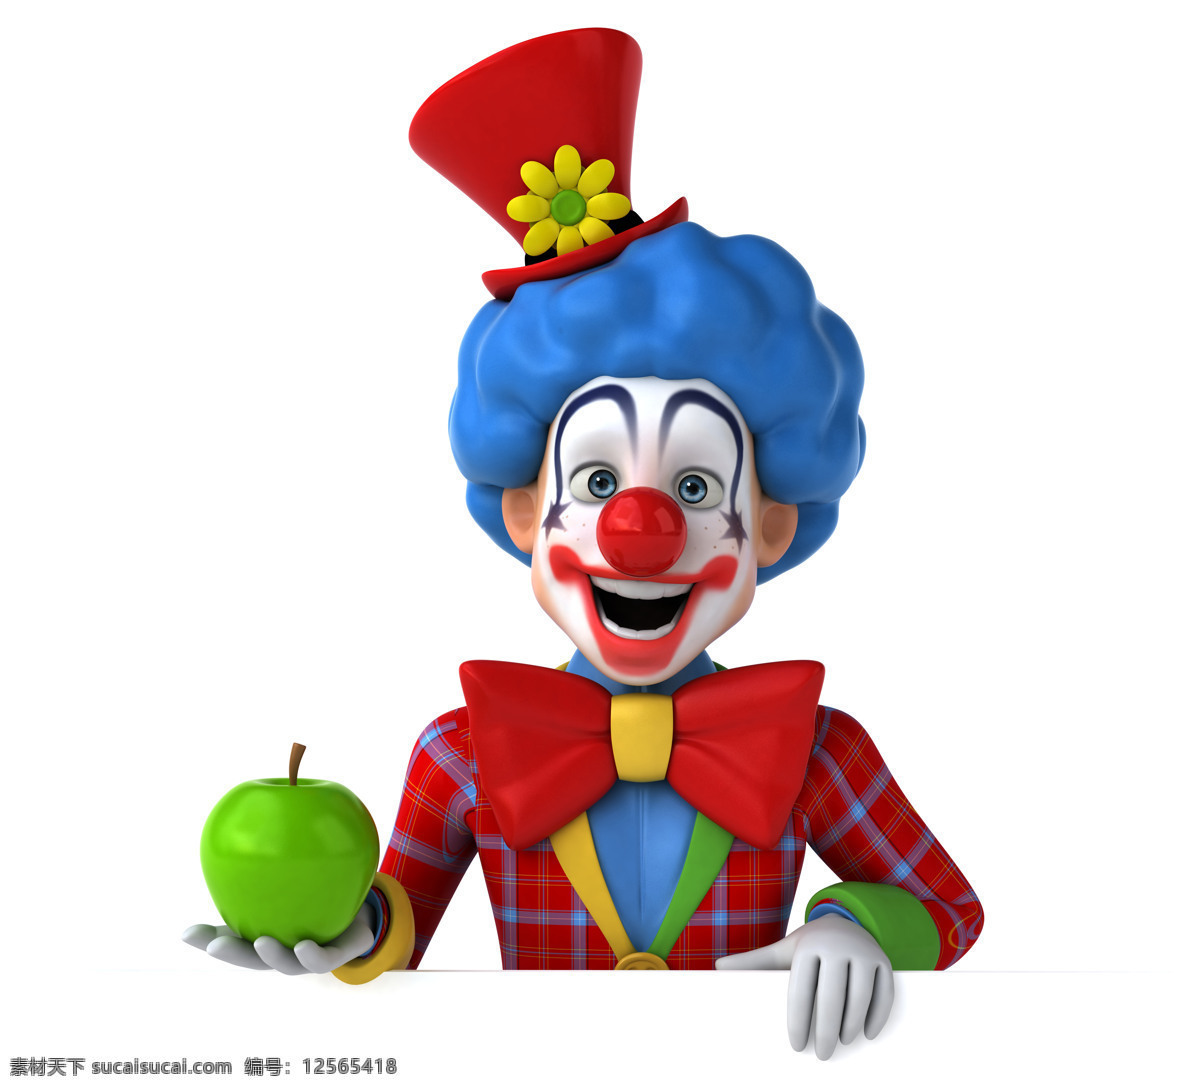 苹果 小丑 3d小丑 卡通小丑 3d卡通人物 马戏团小丑 其他类别 生活百科